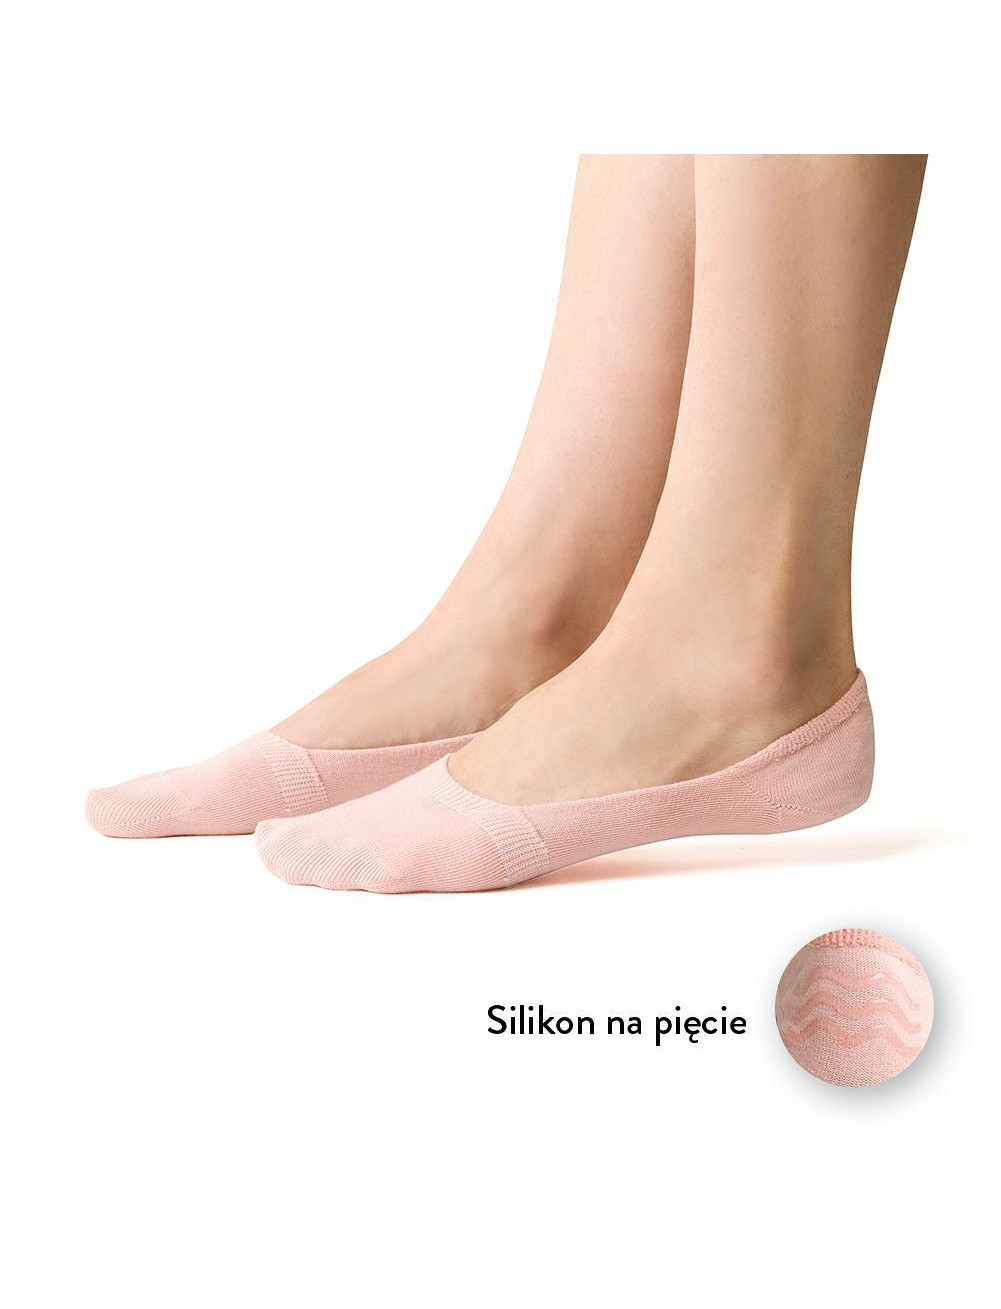 Dámské ponožky baleríny Steven art.058 35-40 černá 38-40